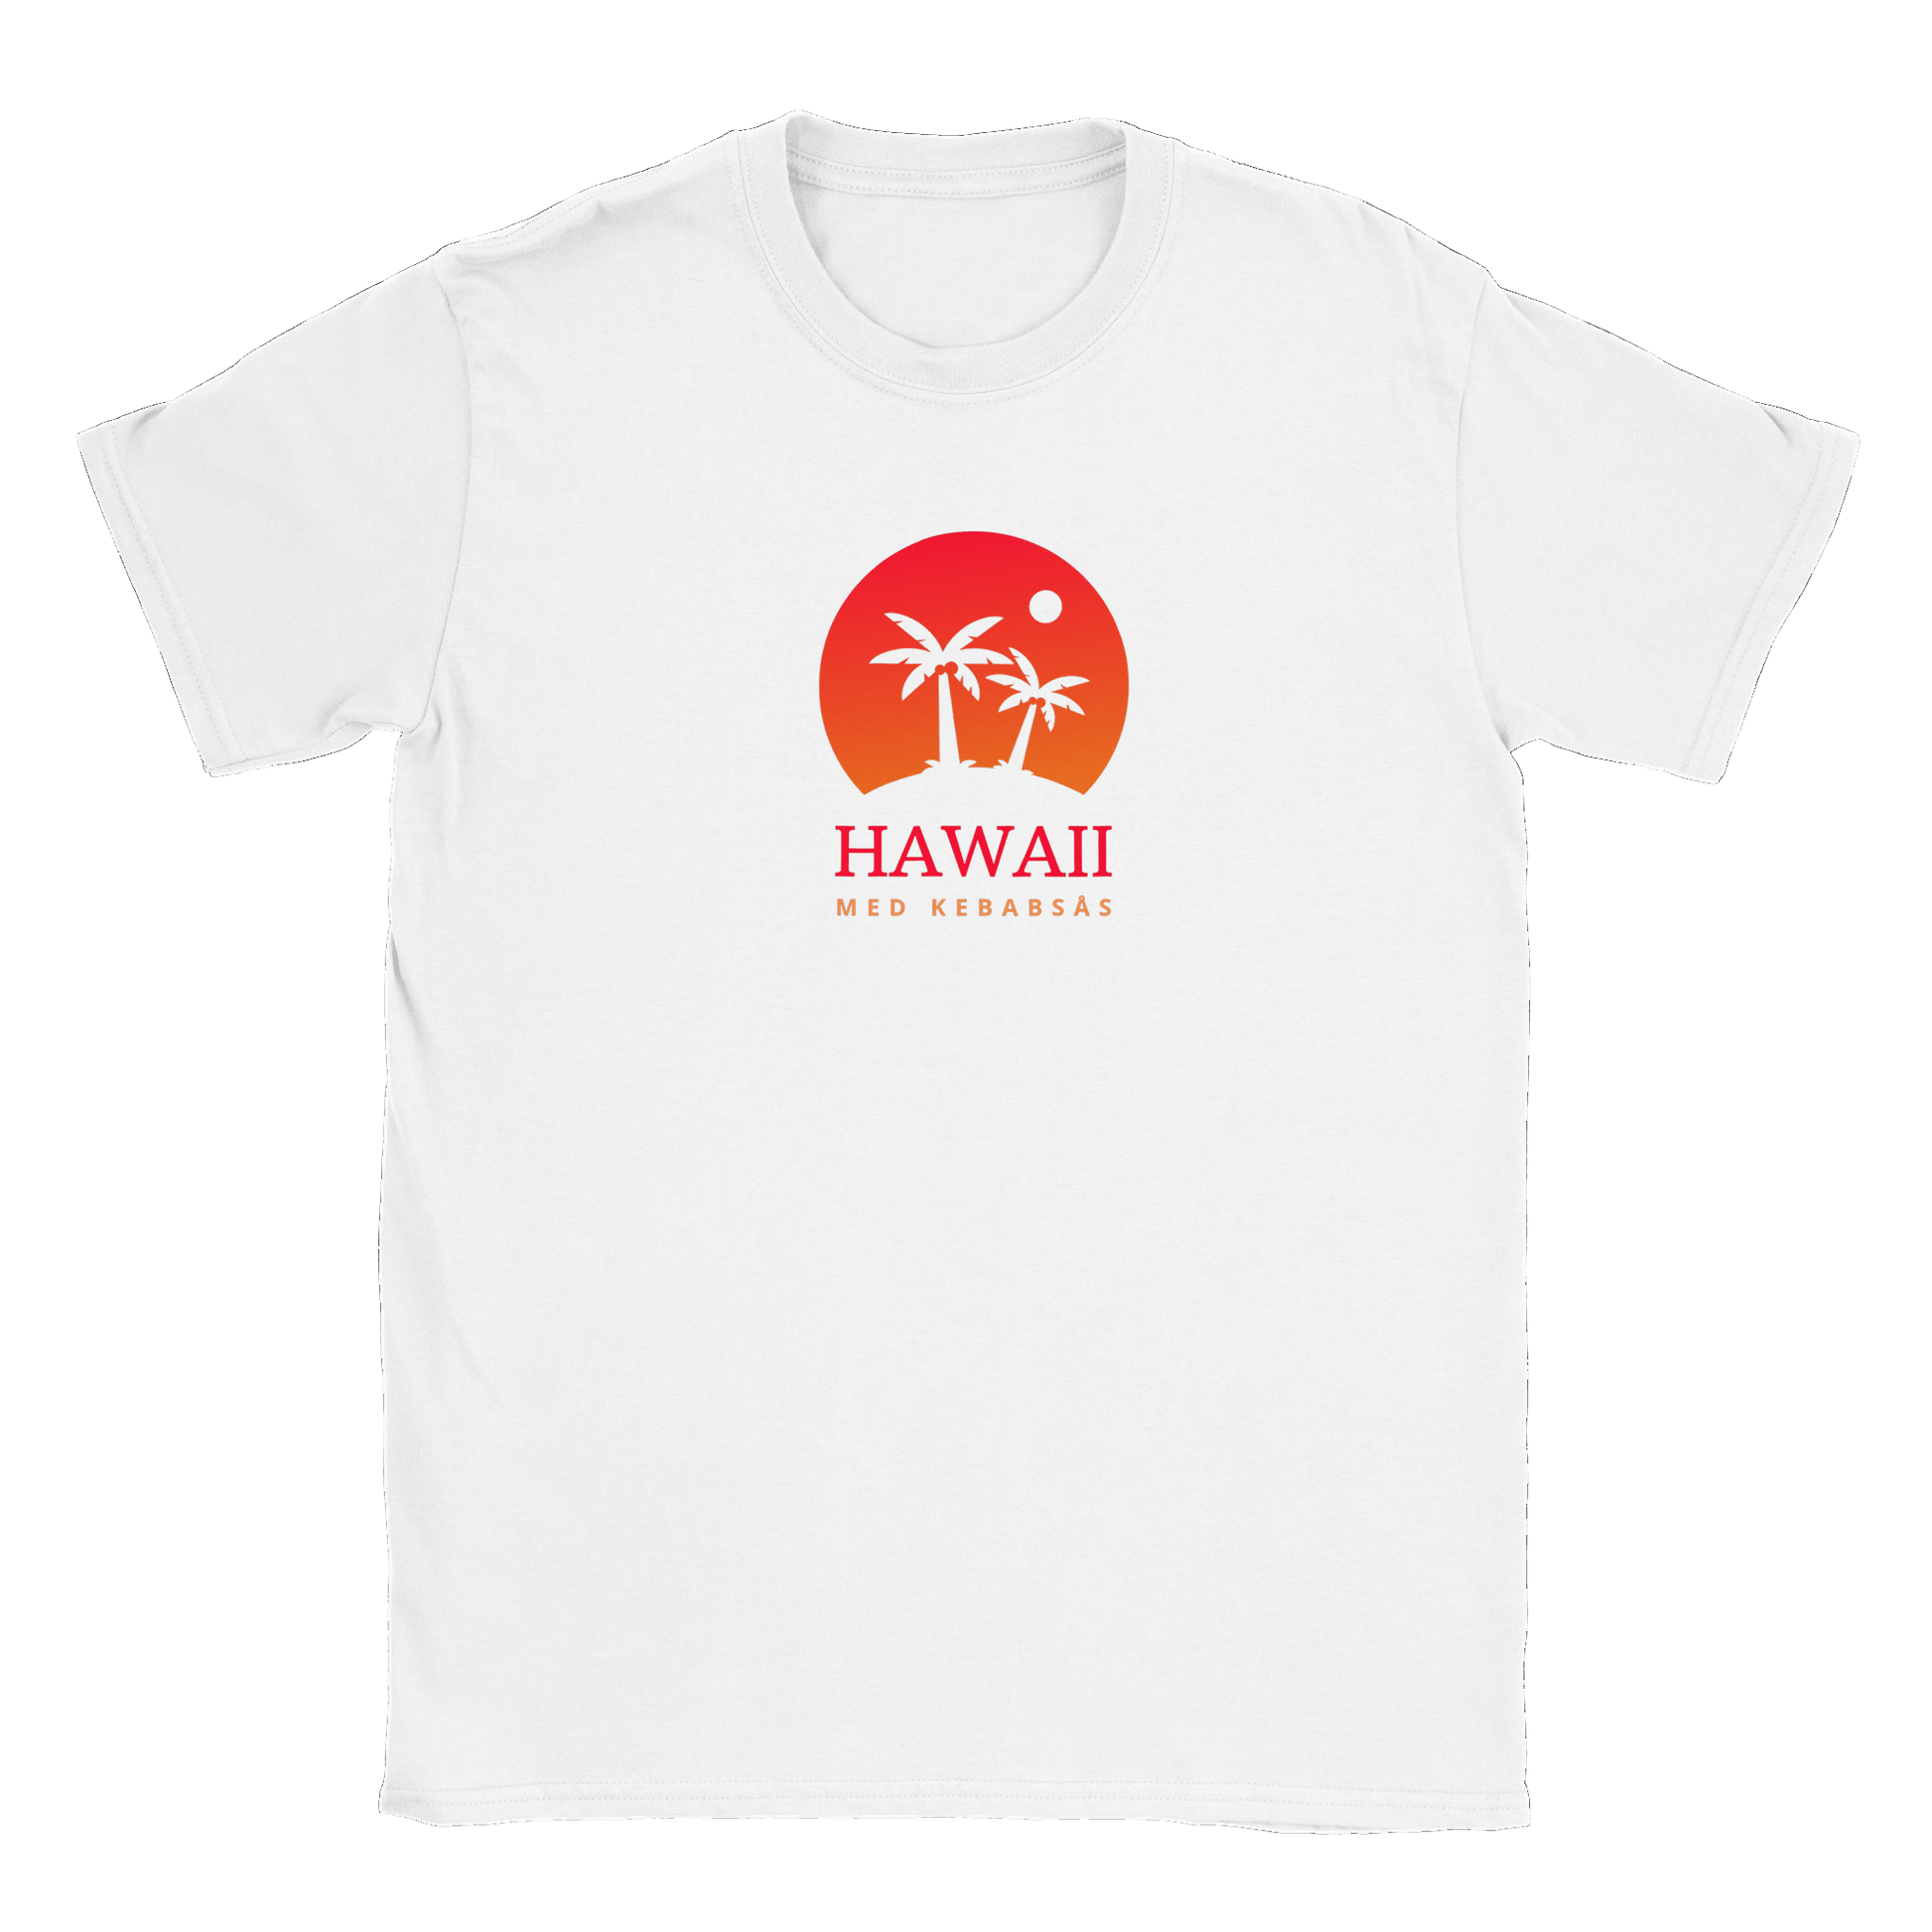 Hawaii med kebabsås - T-shirt Vit